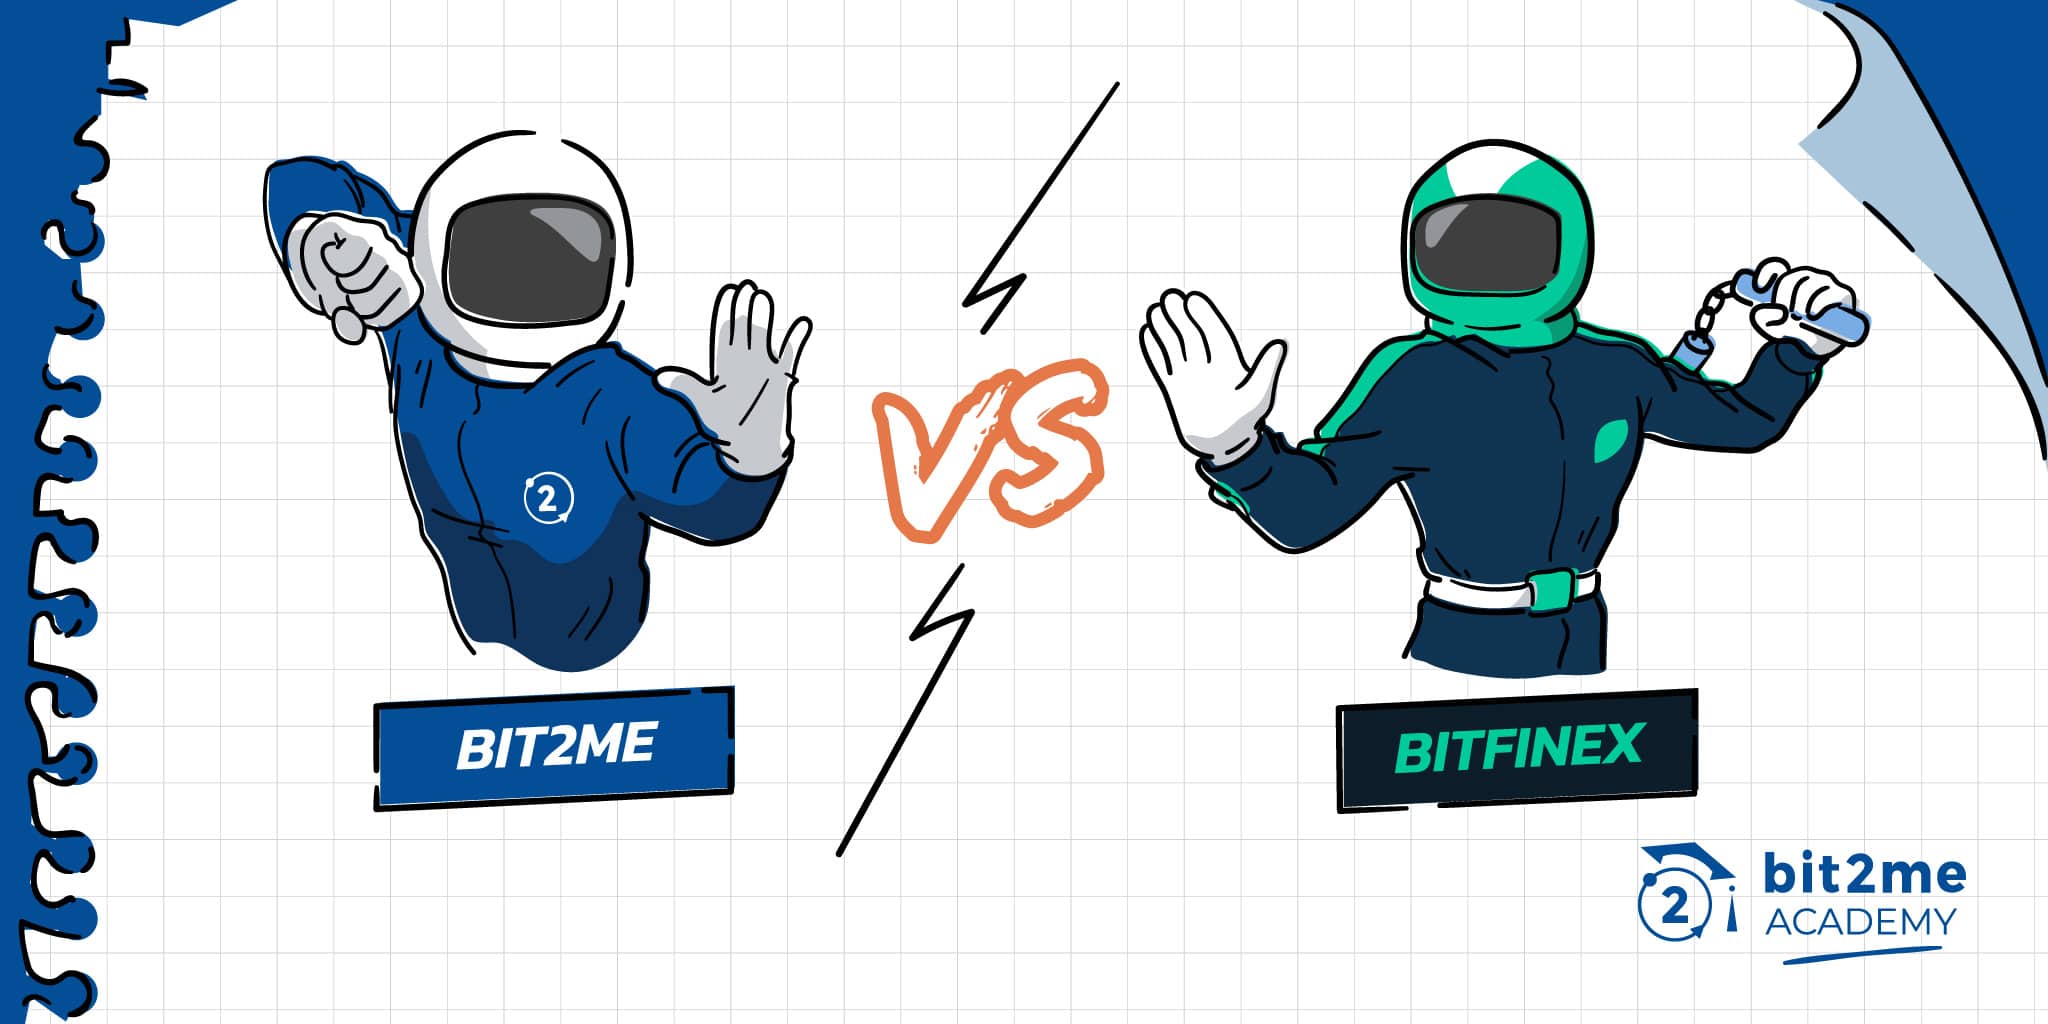 Comparação detalhada entre Bit2Me e Bitfinex